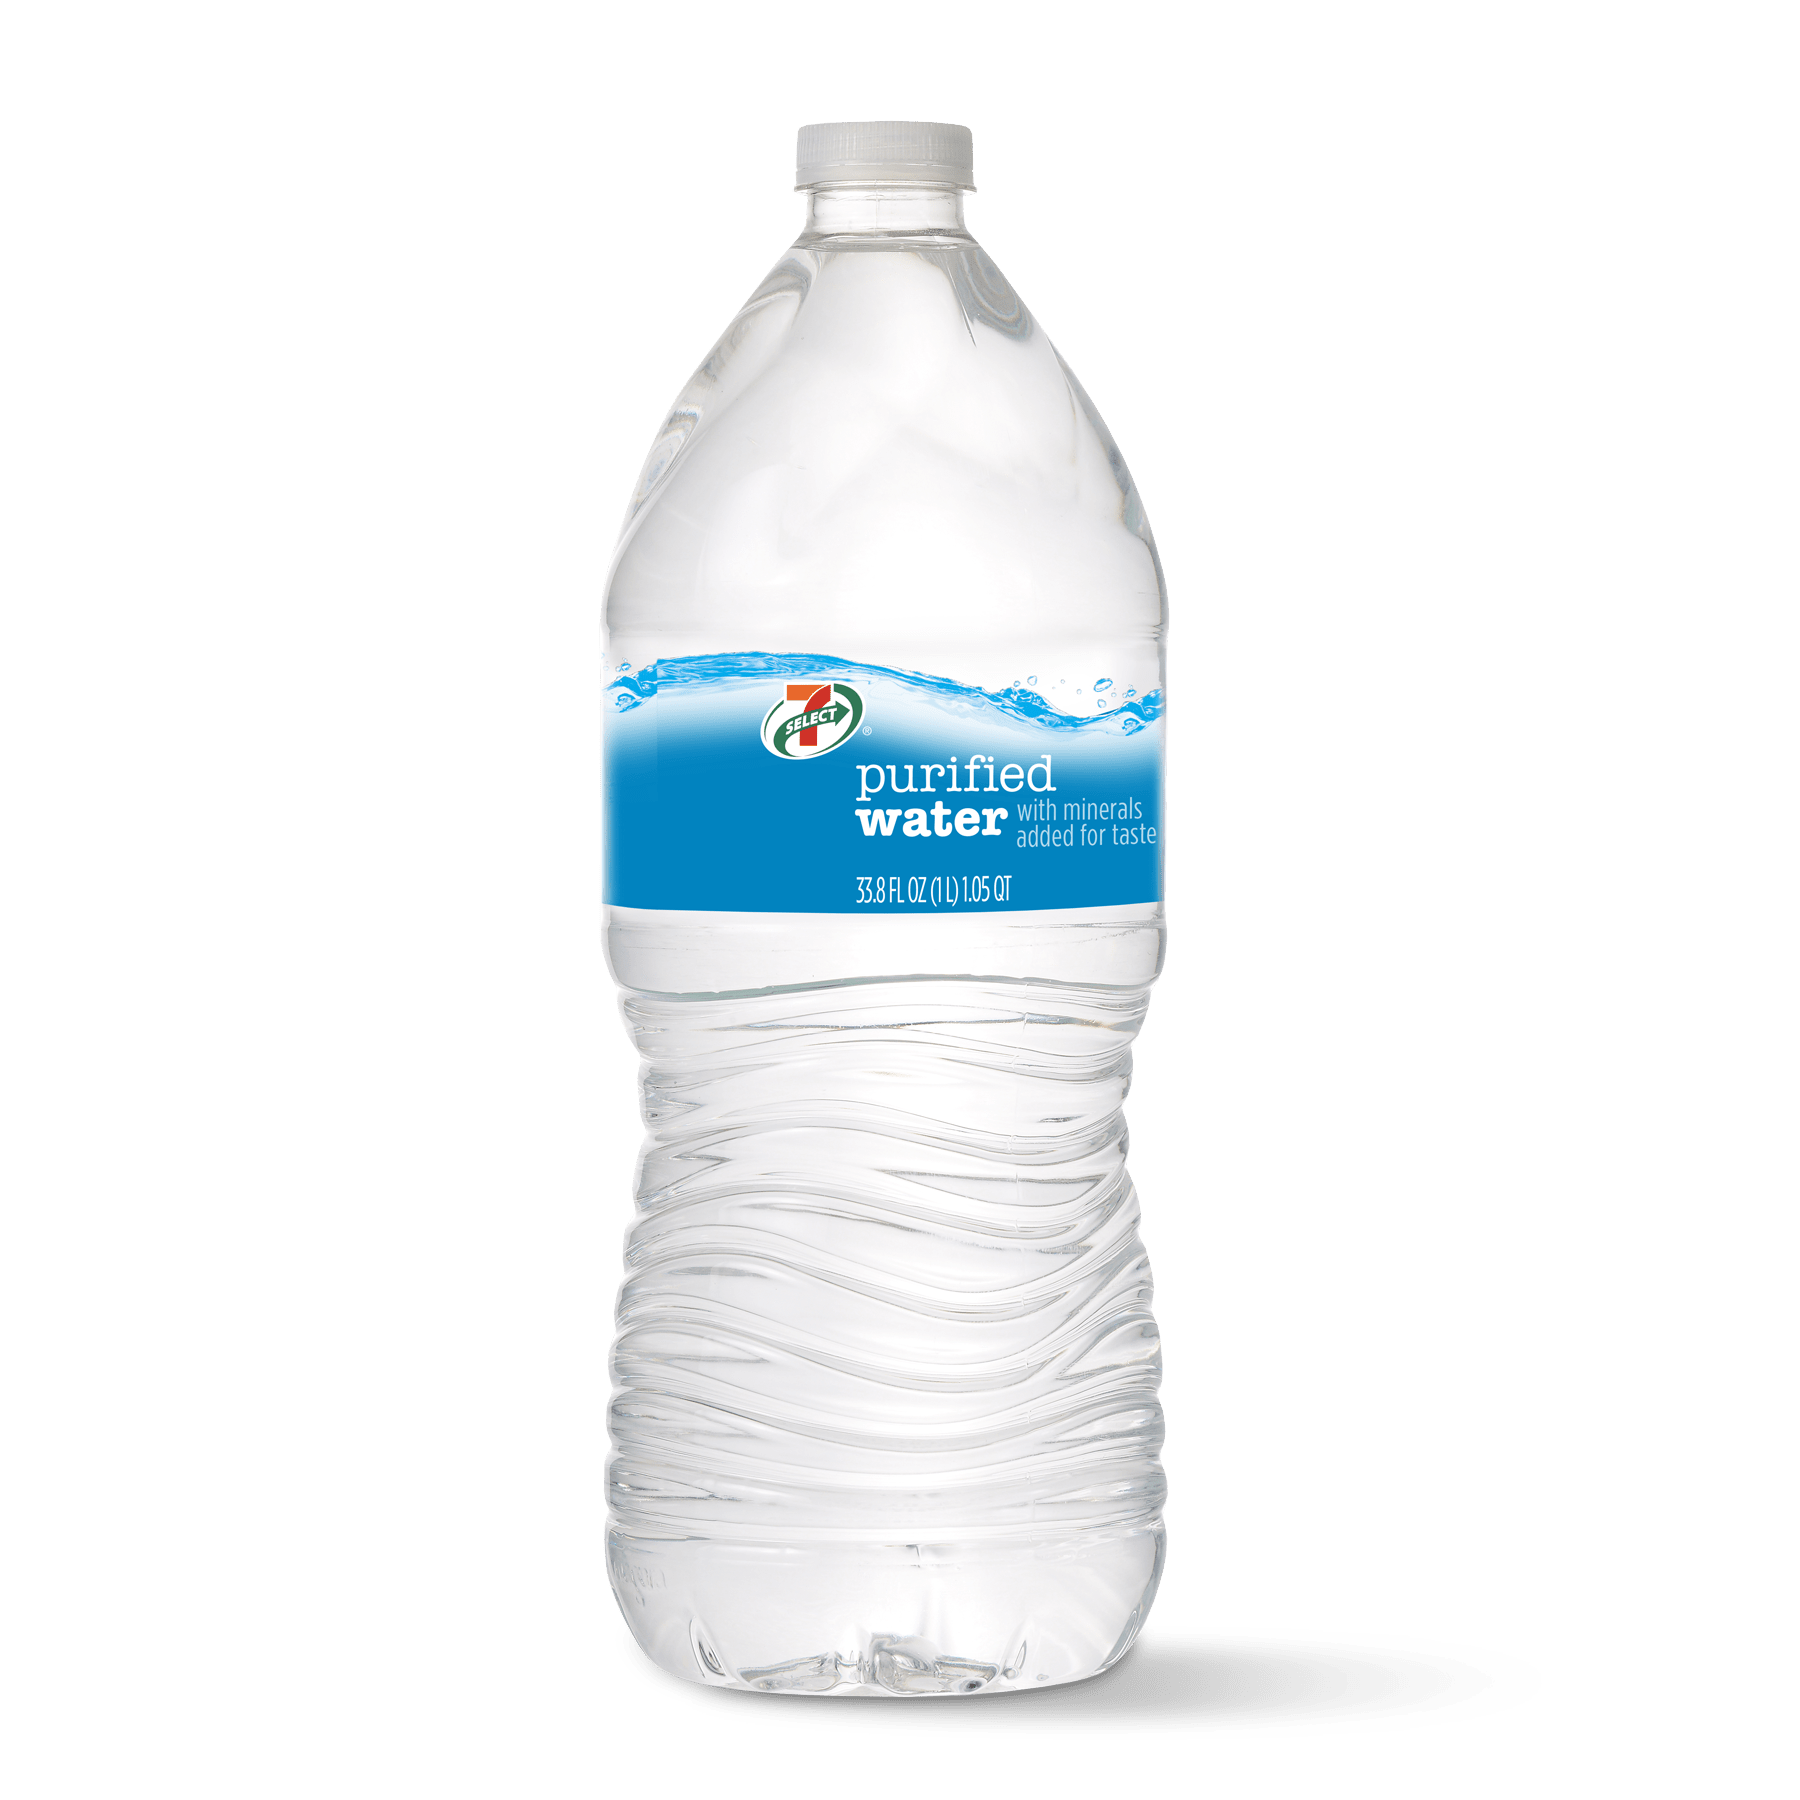 Mount Franklin Spring Water Bottle 1.5L